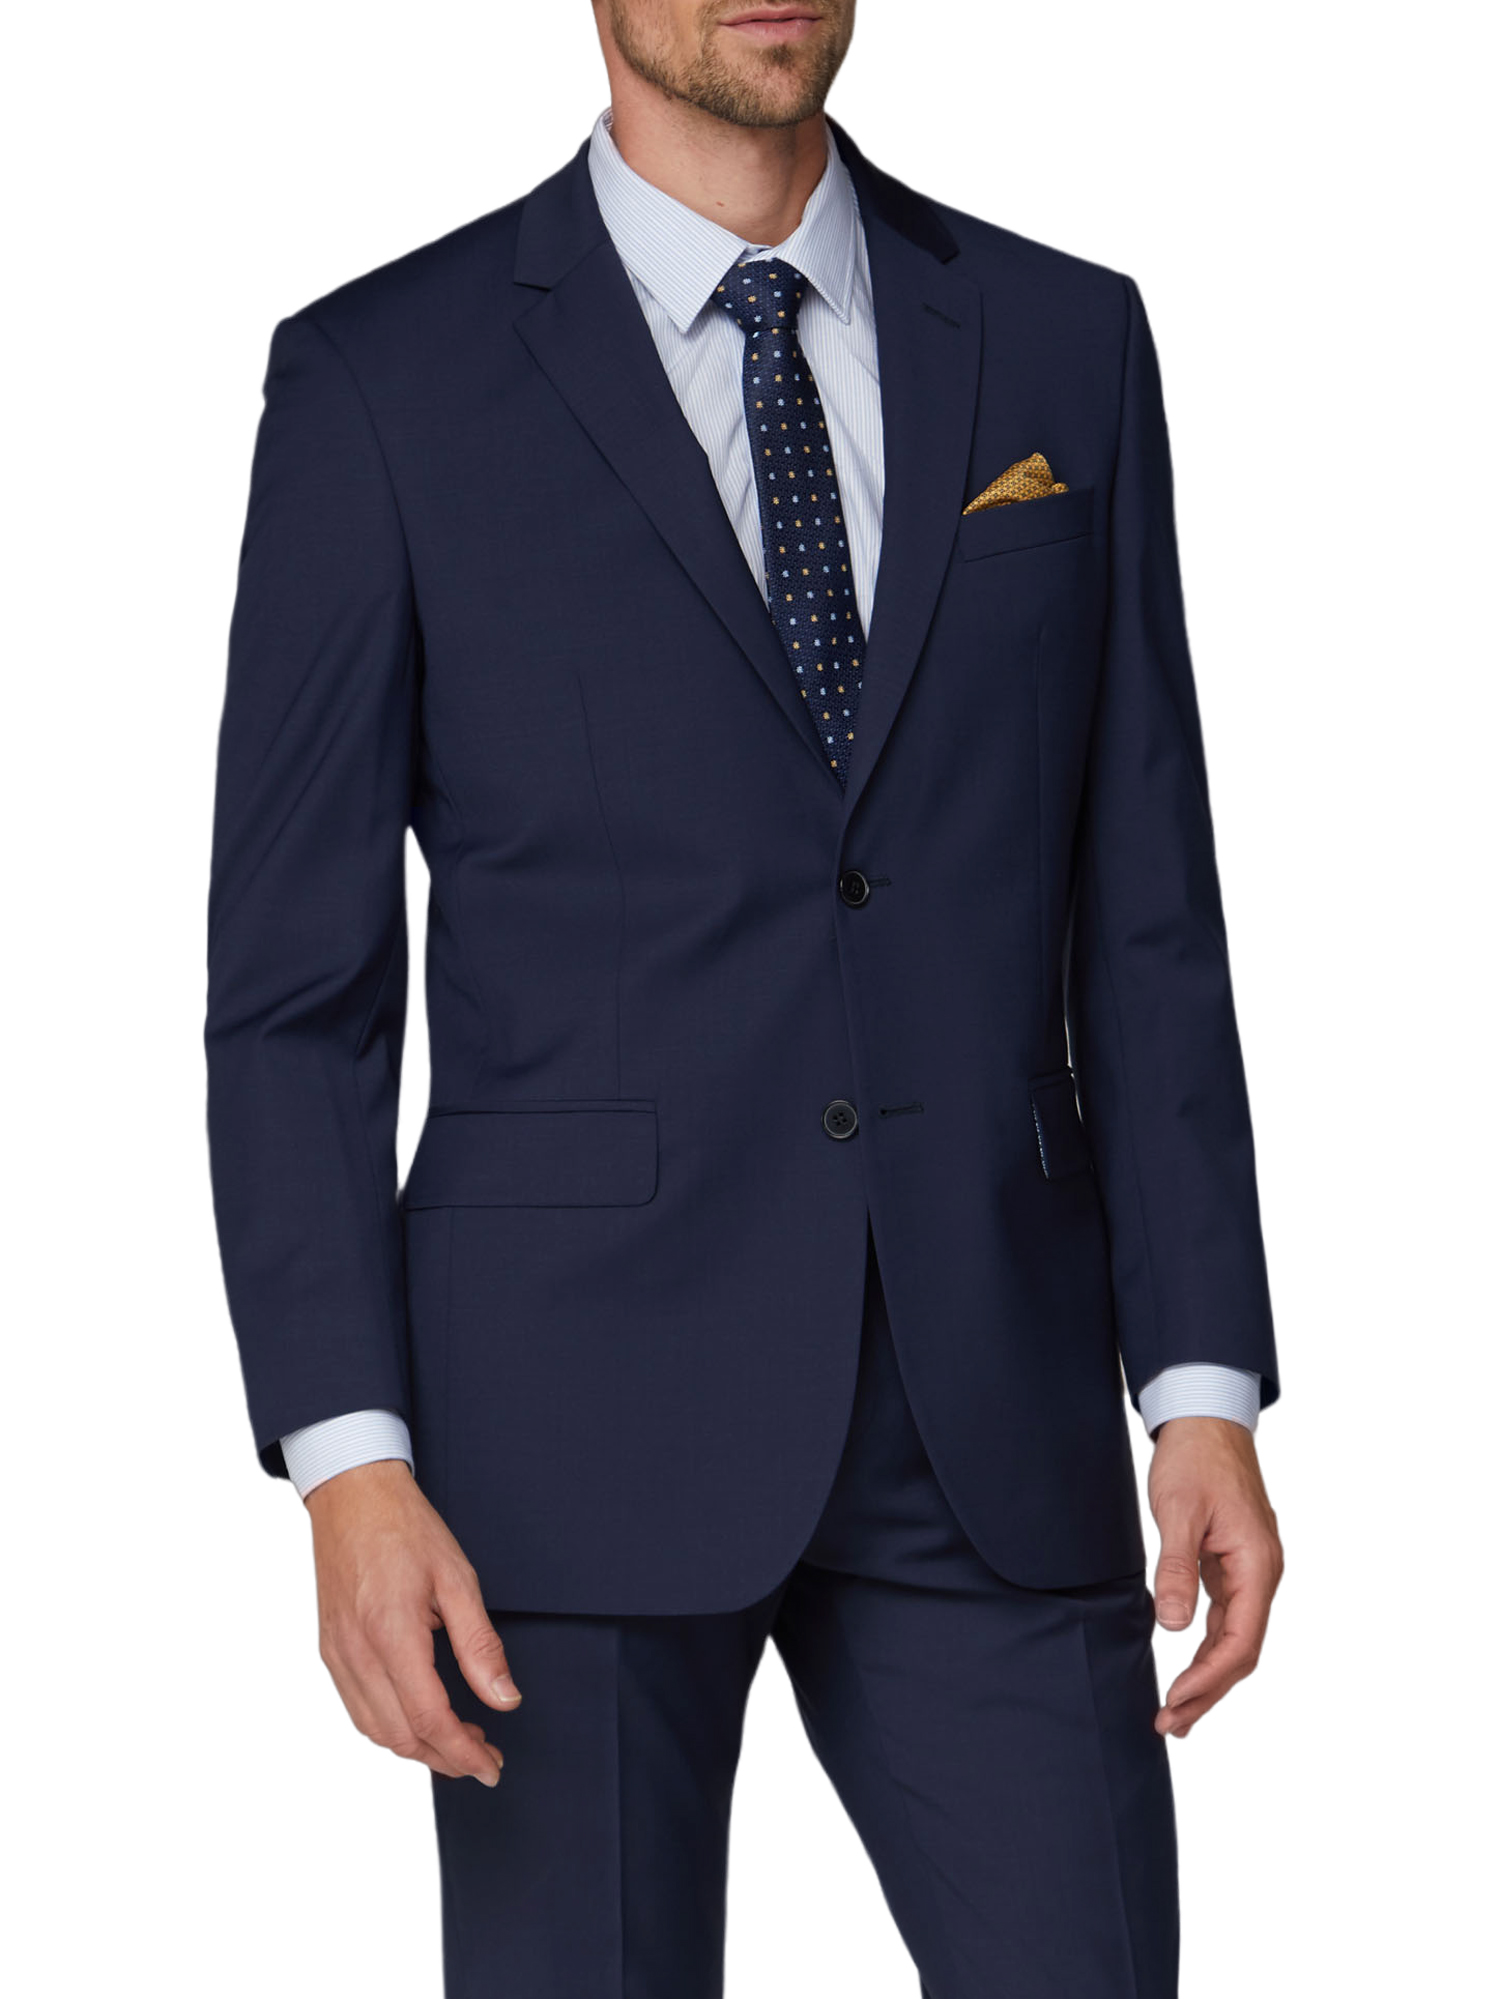 Navy Blue Plain Twill Regular Fit Suit - Two Piece Suits - Alexandre London